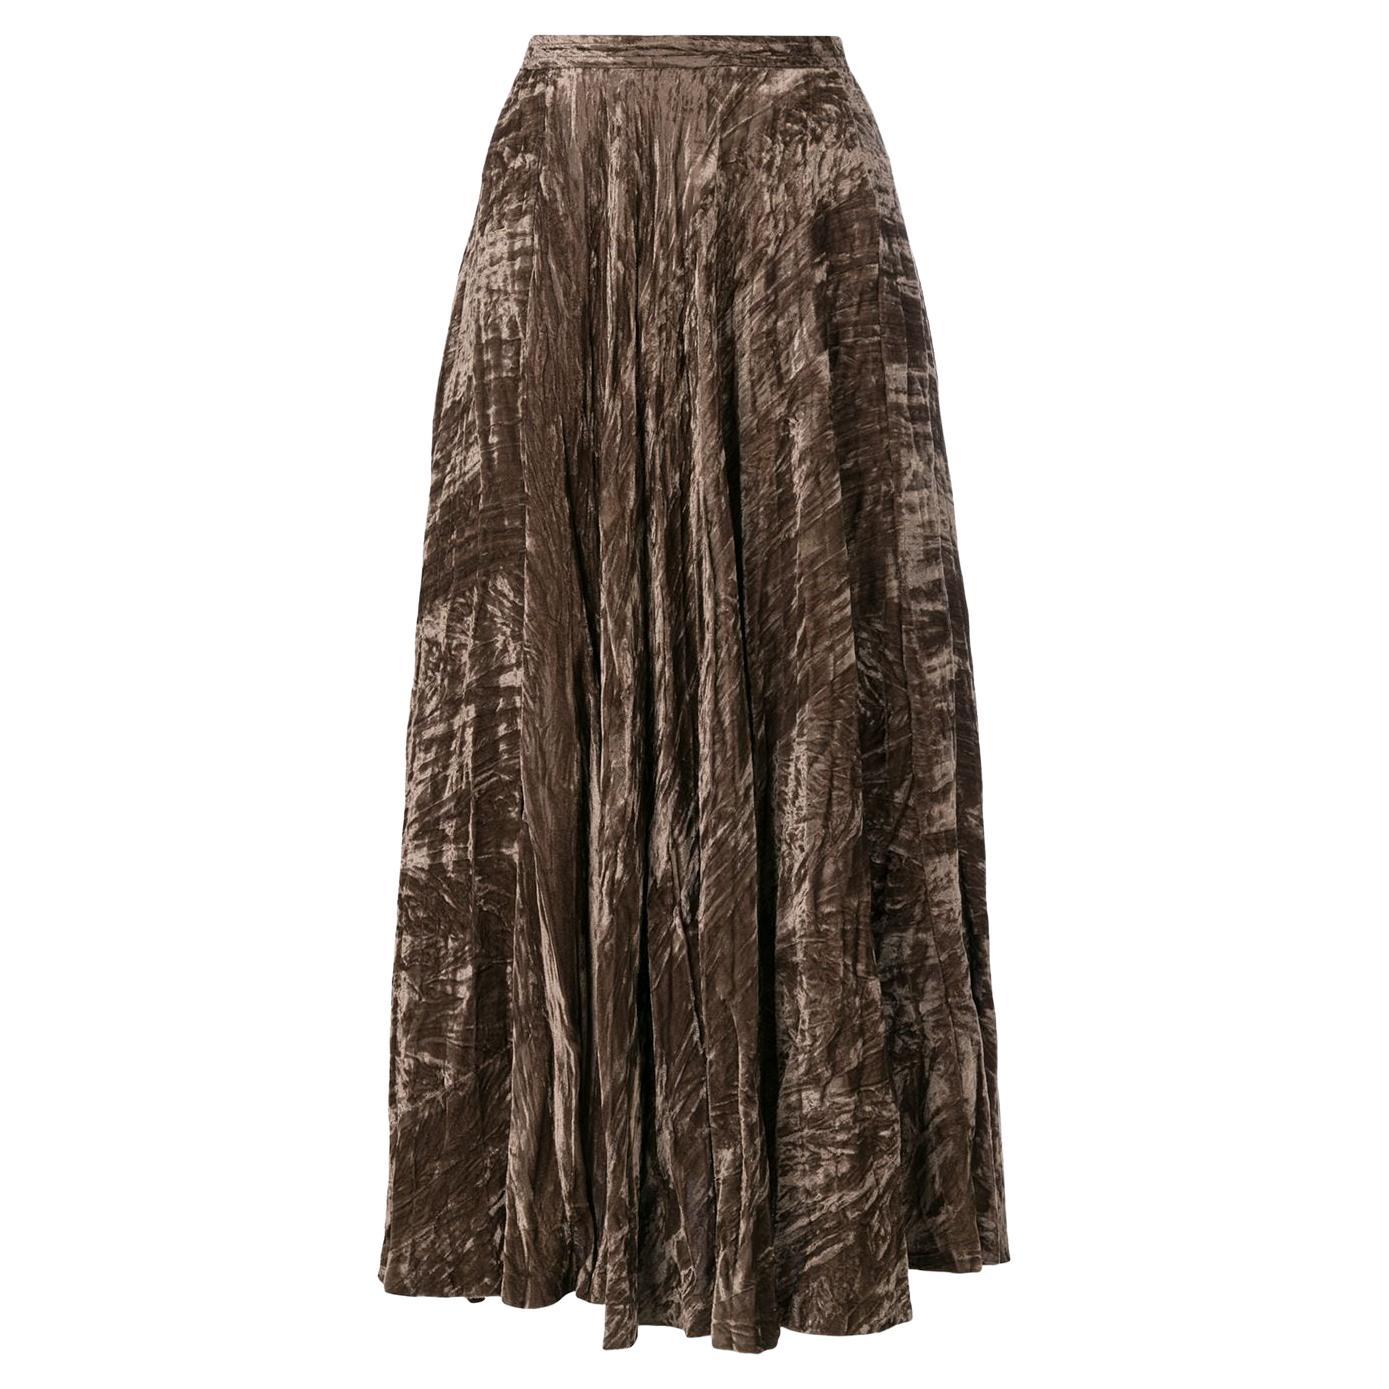 Iconic 1970 Yves Saint Laurent YSL Evening Crushed Velvet Skirt